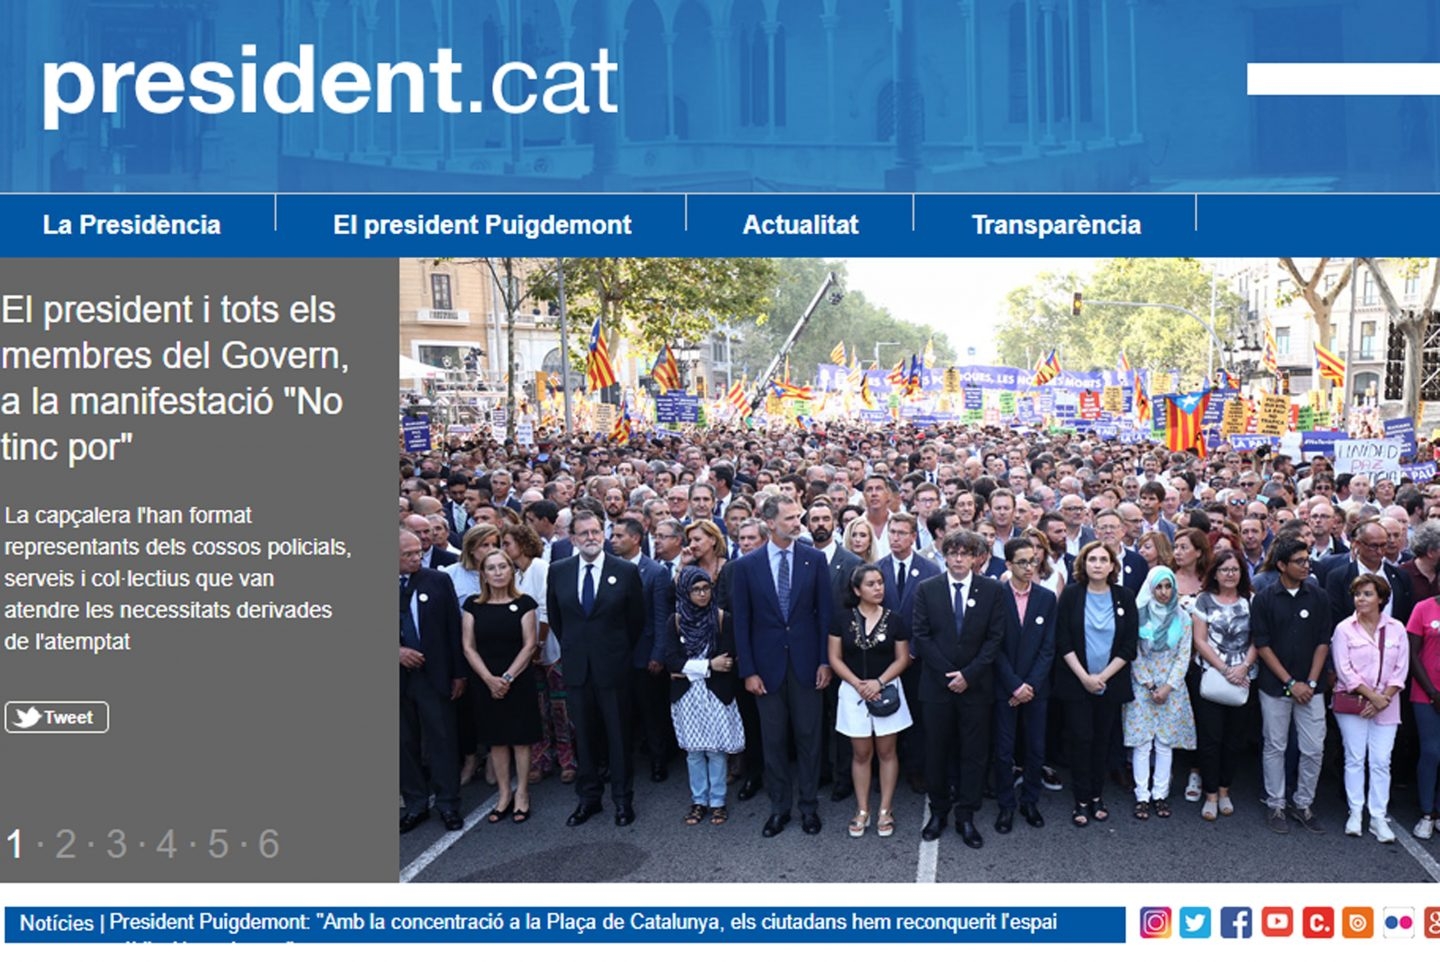 Puigdemont reabre su web como "president" en el exilio desde un dominio europeo